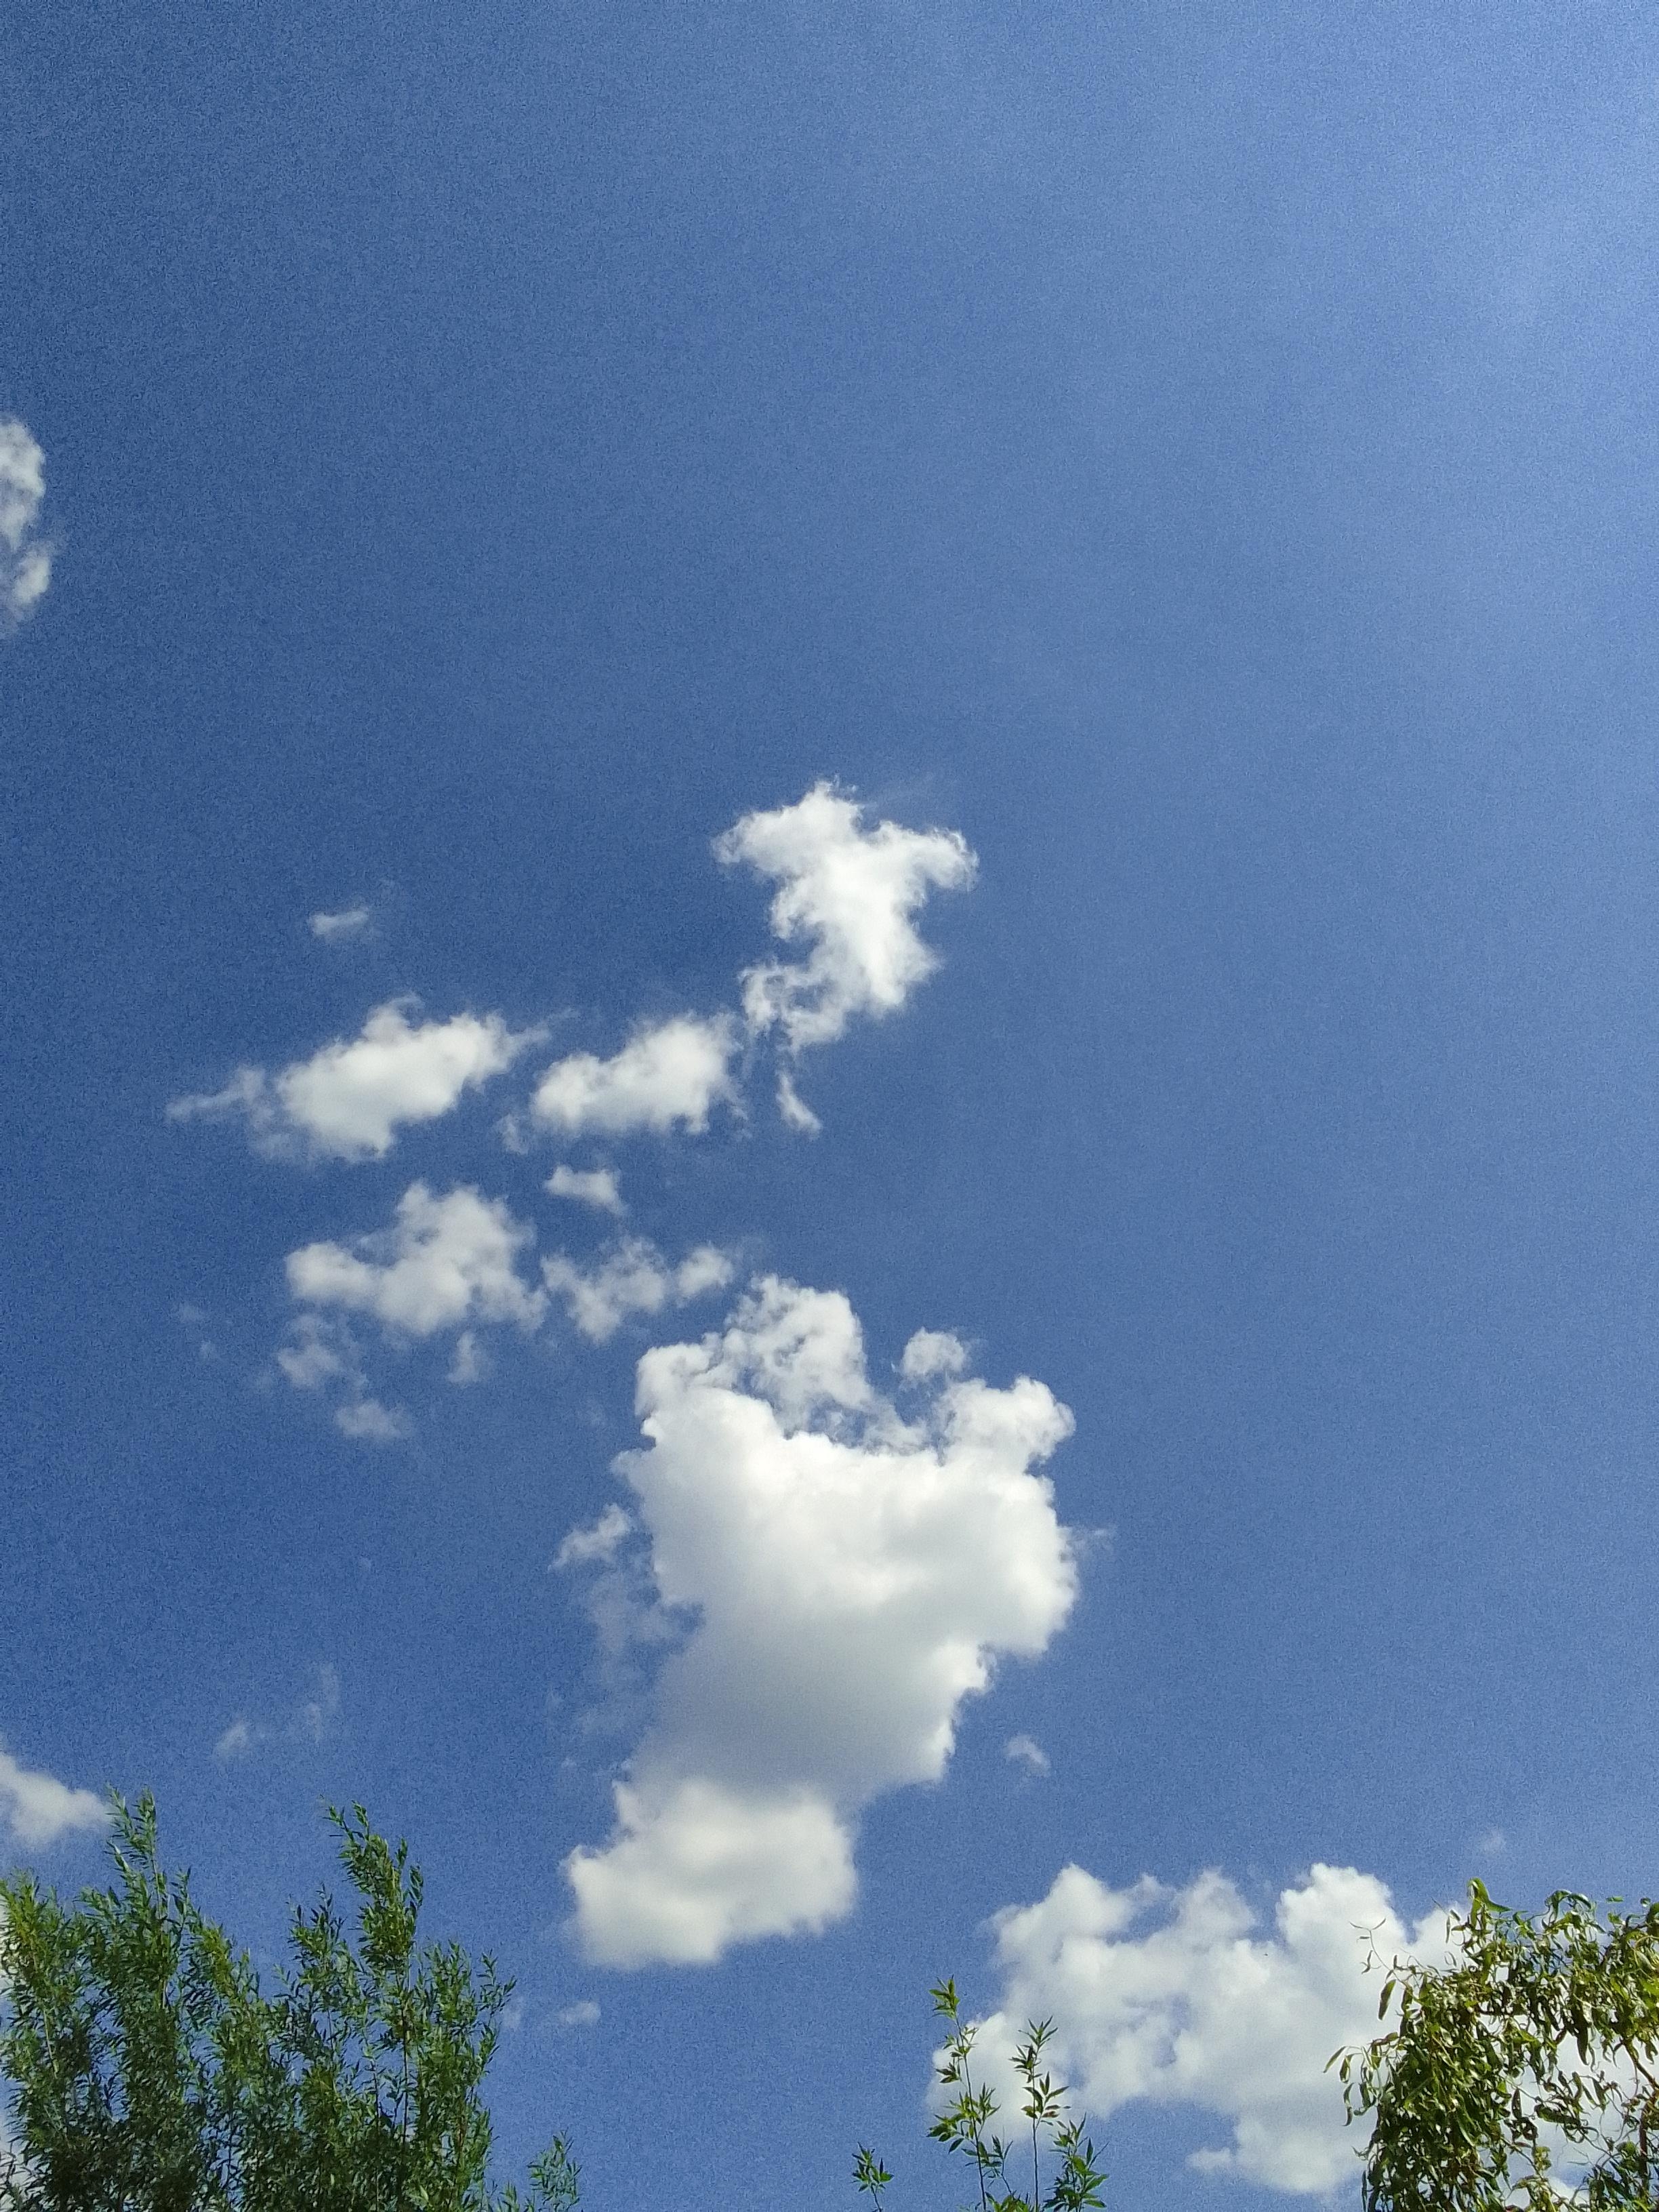 #himmelblau #naturdeko 
Gesichter in Wolken lesen